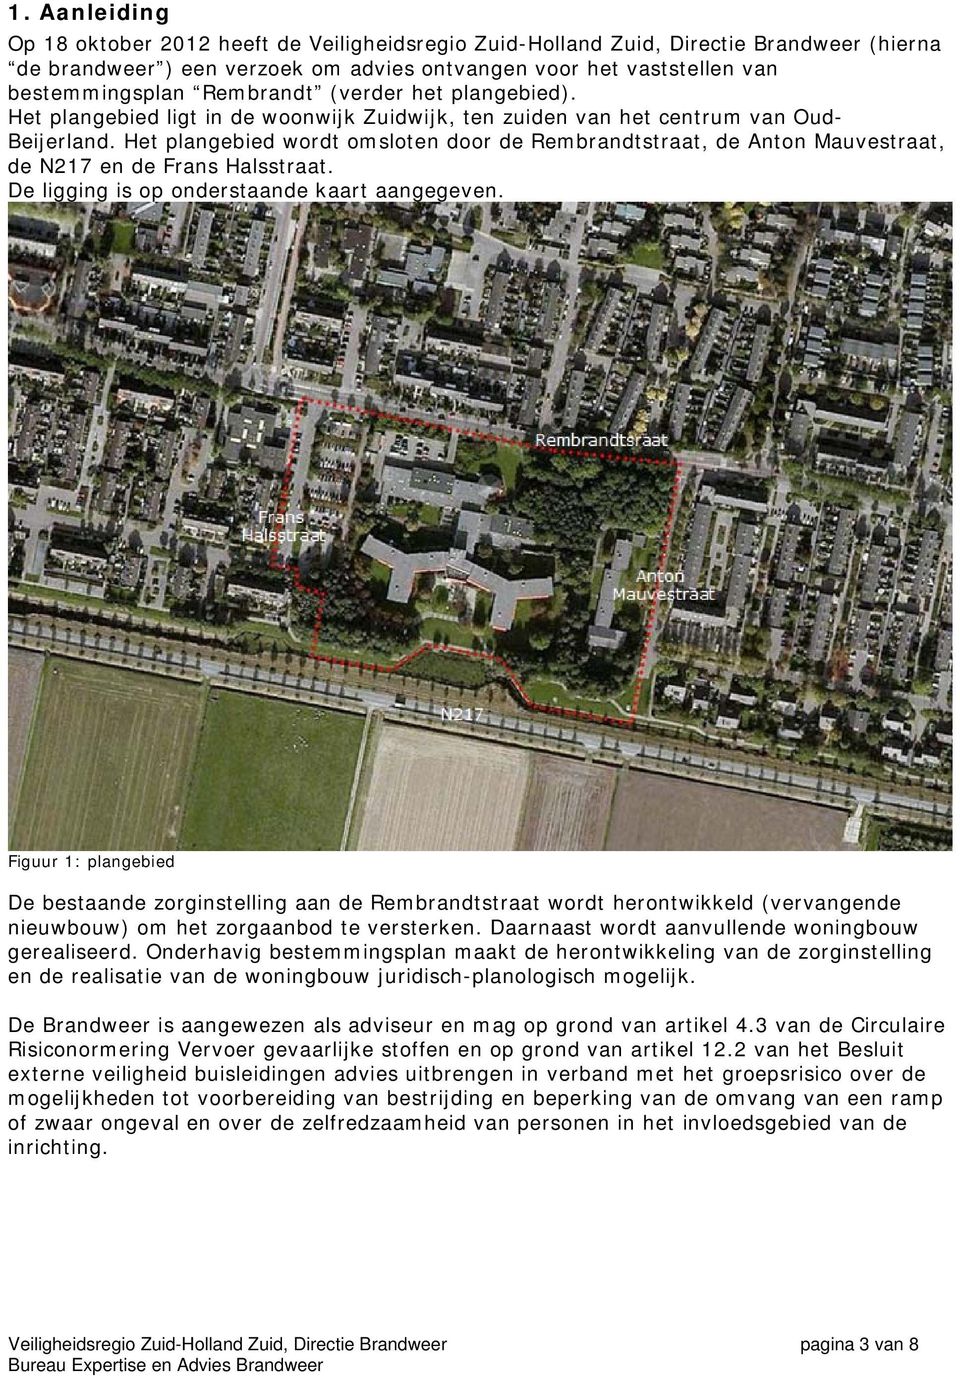 Het plangebied wordt omsloten door de Rembrandtstraat, de Anton Mauvestraat, de N217 en de Frans Halsstraat. De ligging is op onderstaande kaart aangegeven.